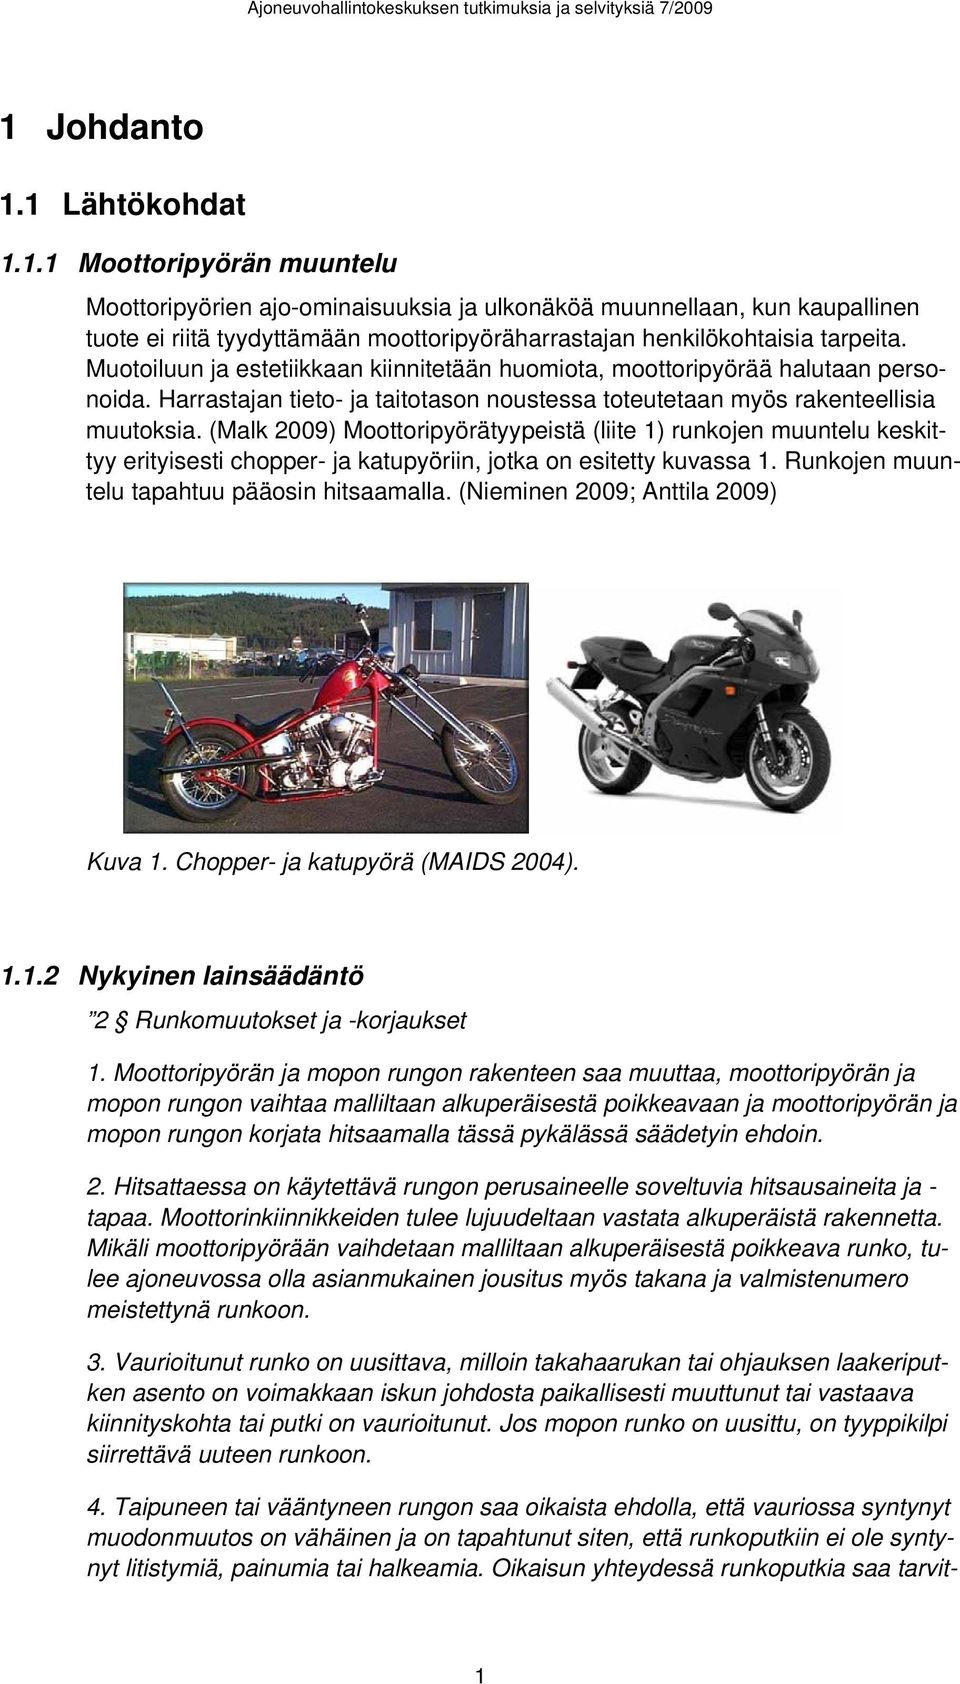 (Malk 2009) Moottoripyörätyypeistä (liite 1) runkojen muuntelu keskittyy erityisesti chopper- ja katupyöriin, jotka on esitetty kuvassa 1. Runkojen muuntelu tapahtuu pääosin hitsaamalla.